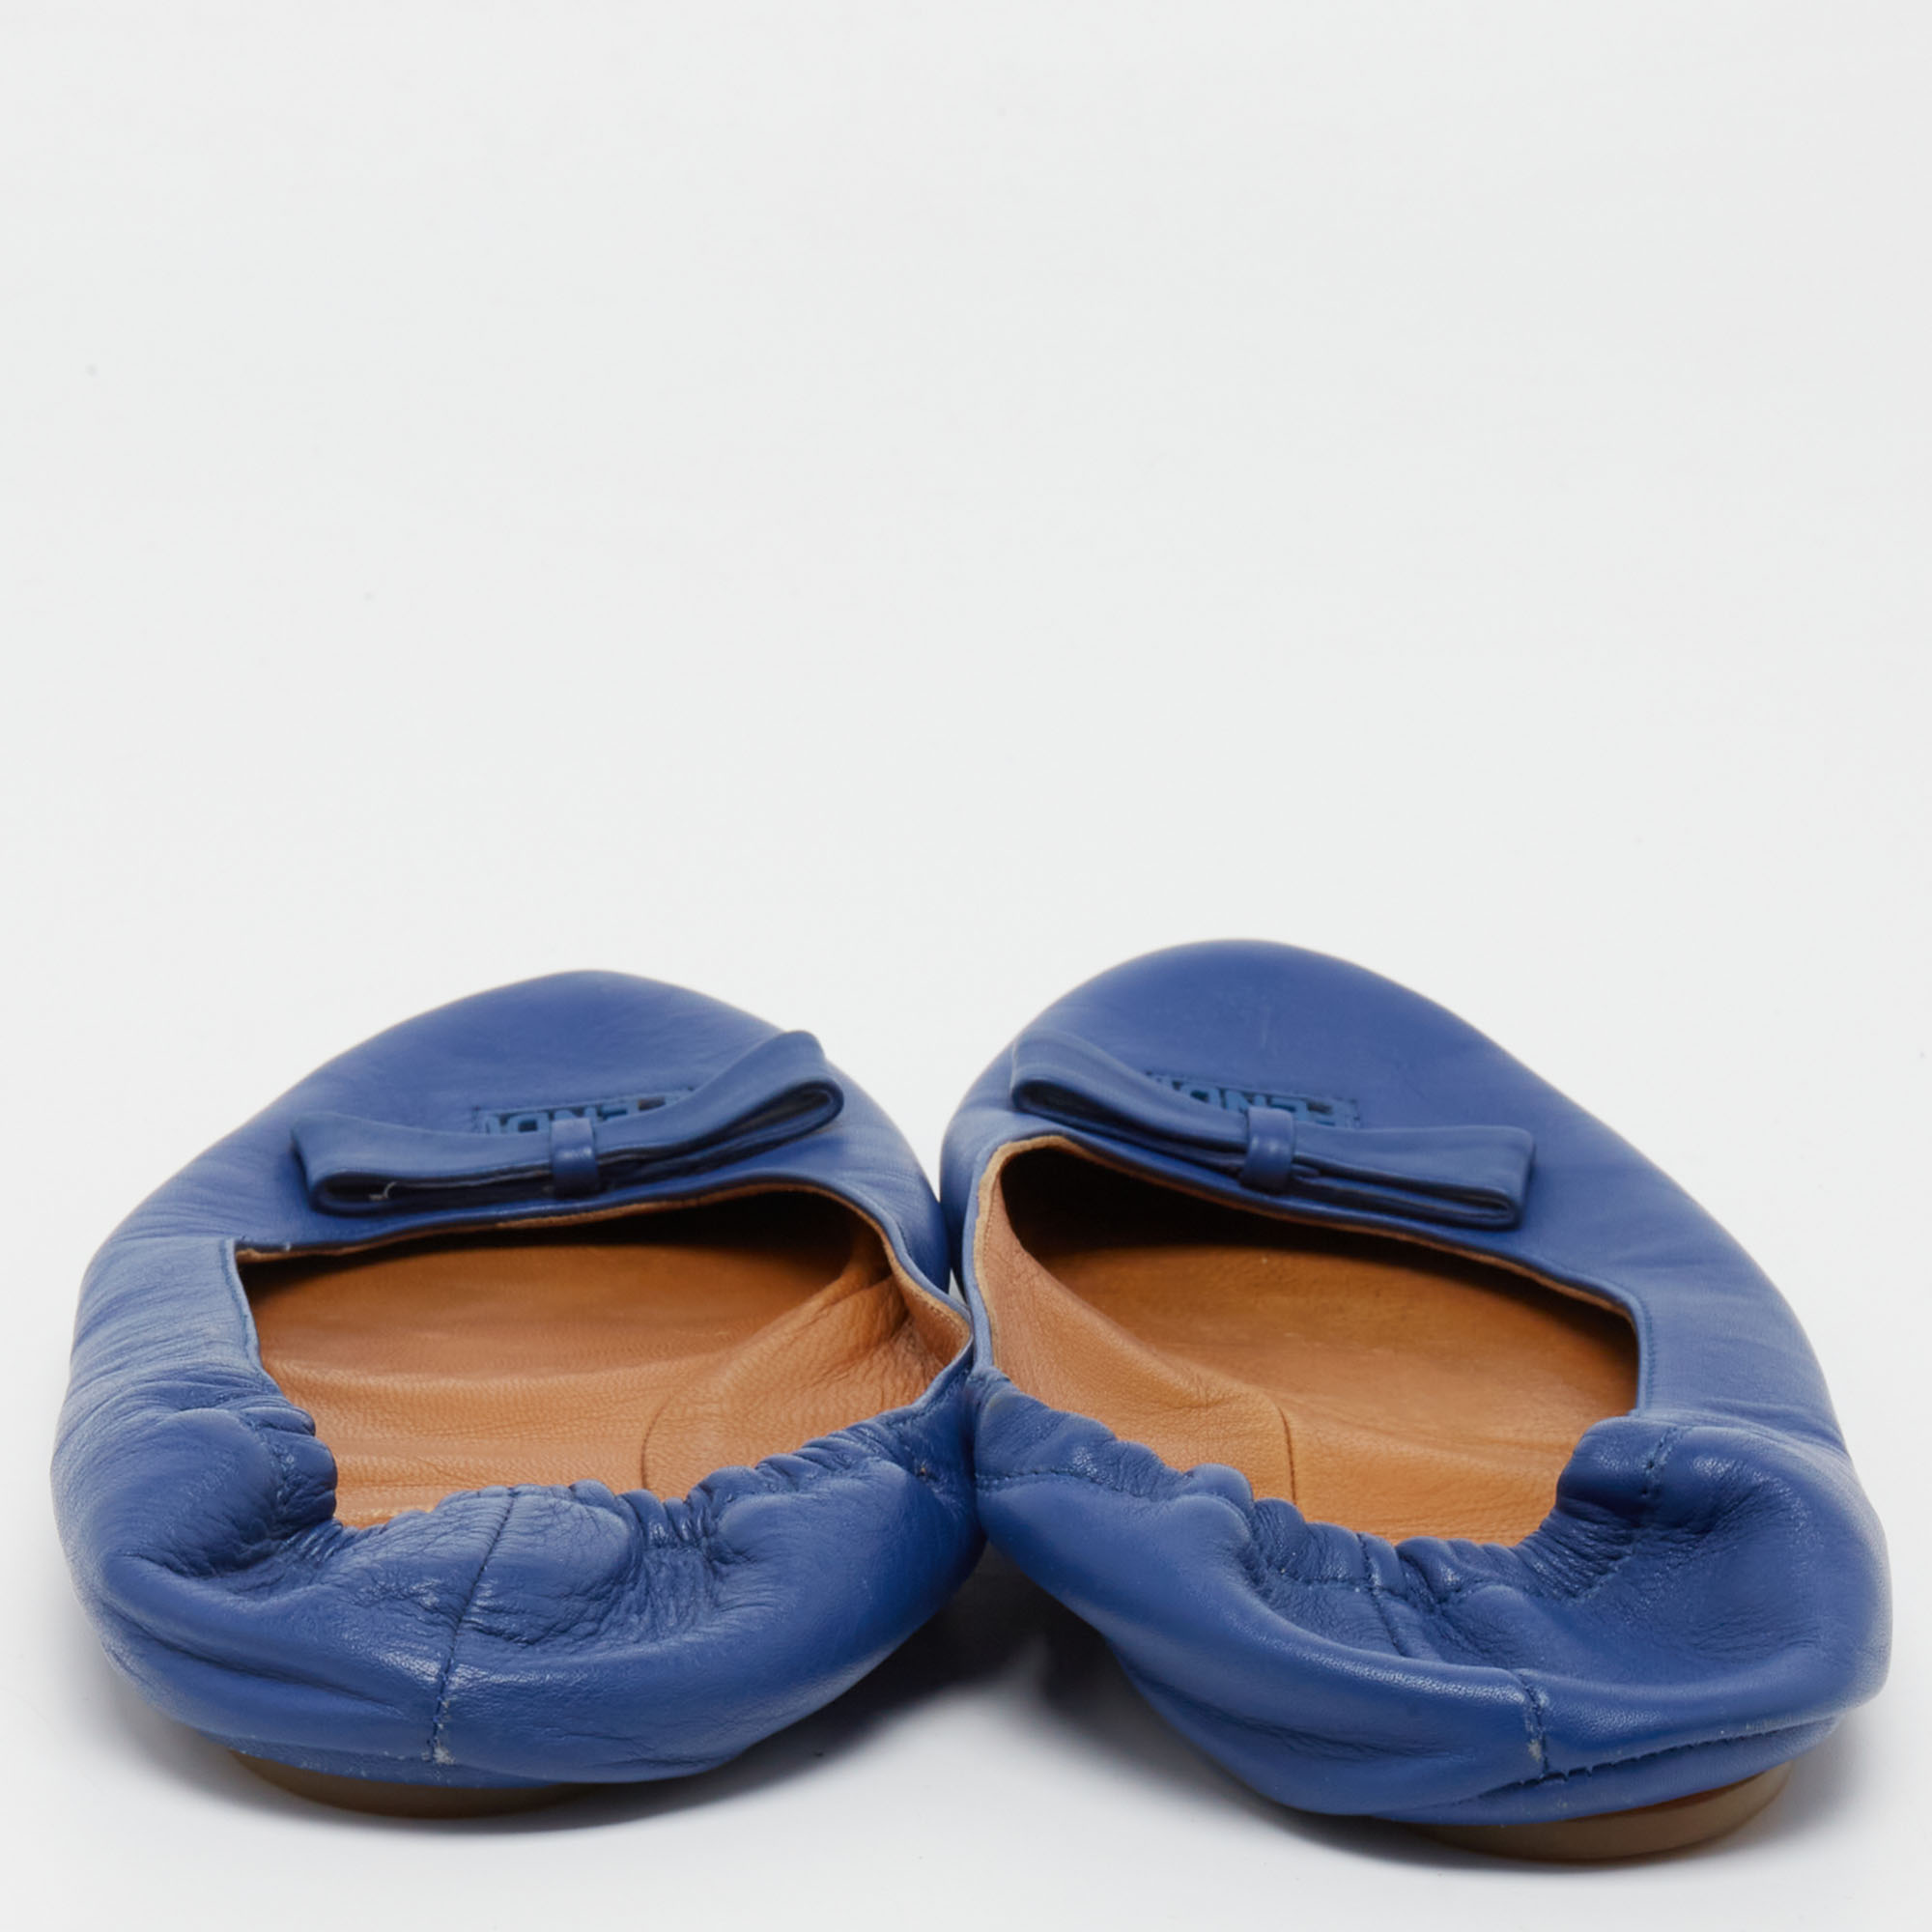 Fendi Blue Leather Let's Dance Bow Ballet Flats Size 39.5